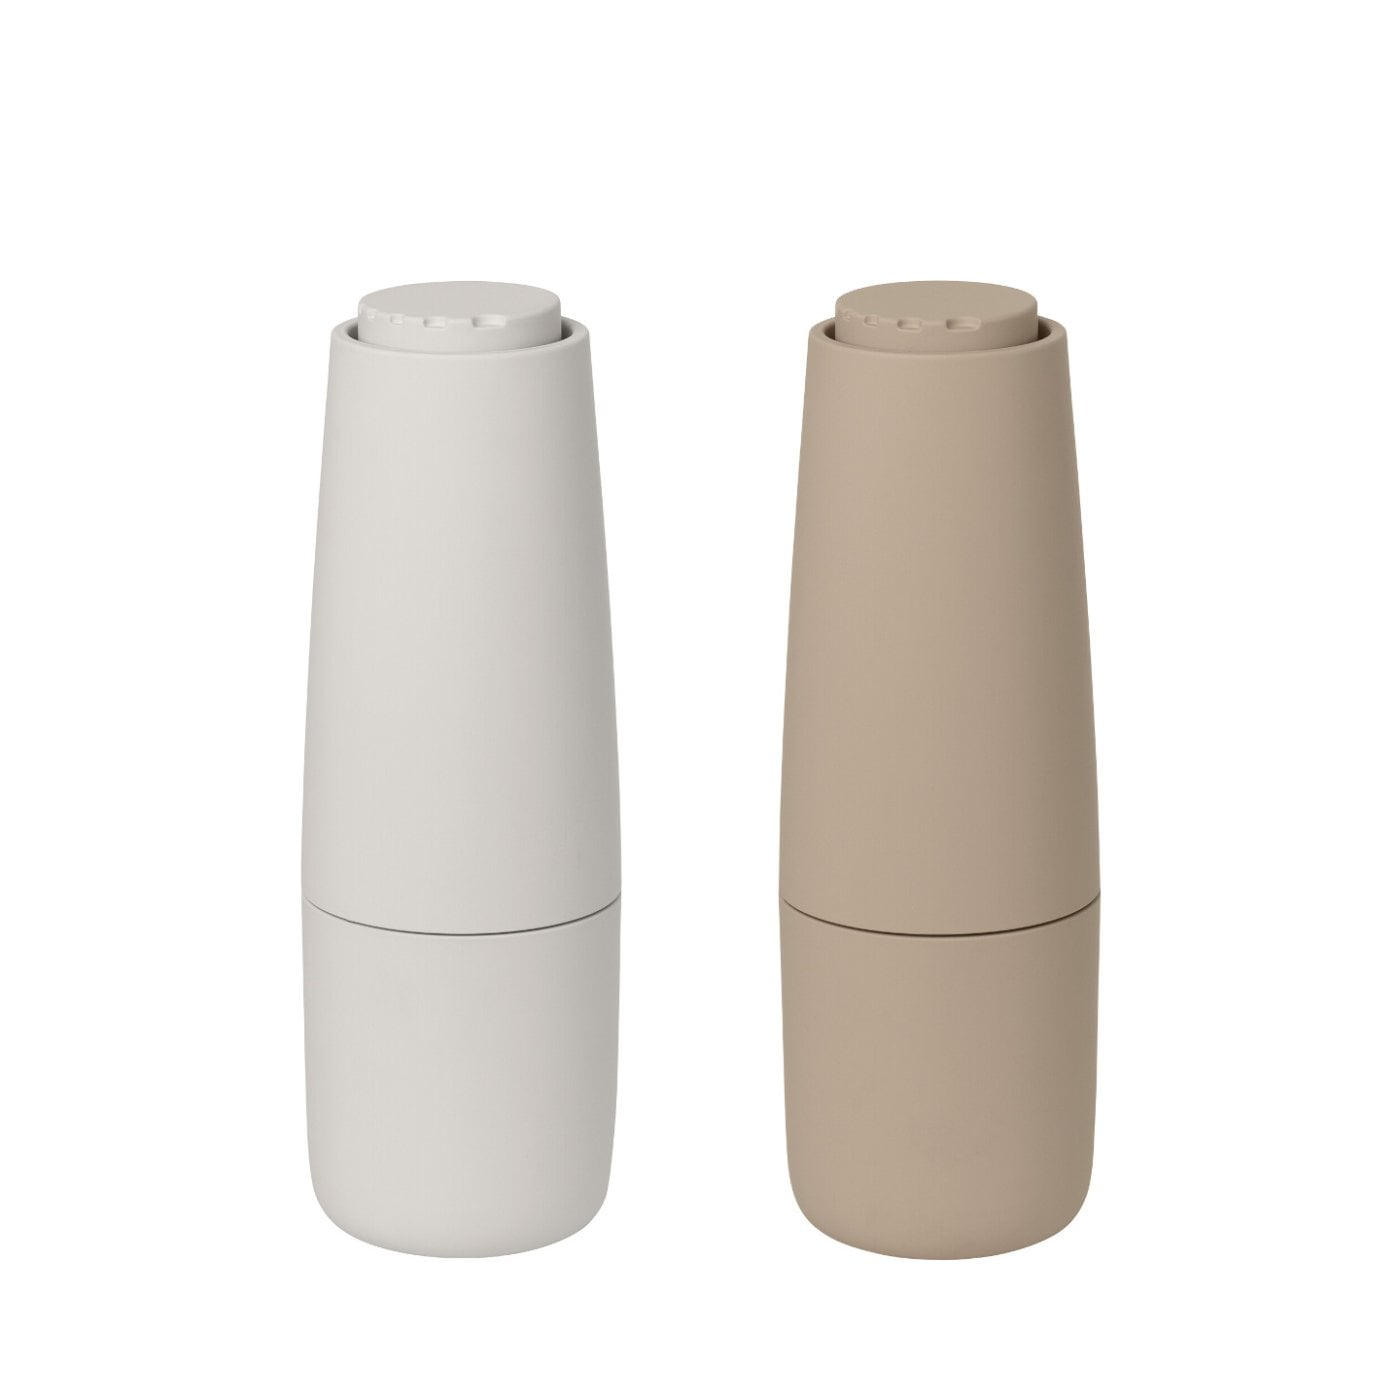 SALZ- UND PFEFFERMÜHLE - Beige/Creme, Design, Keramik/Kunststoff (7,0/20,0/7,0cm) - Blomus